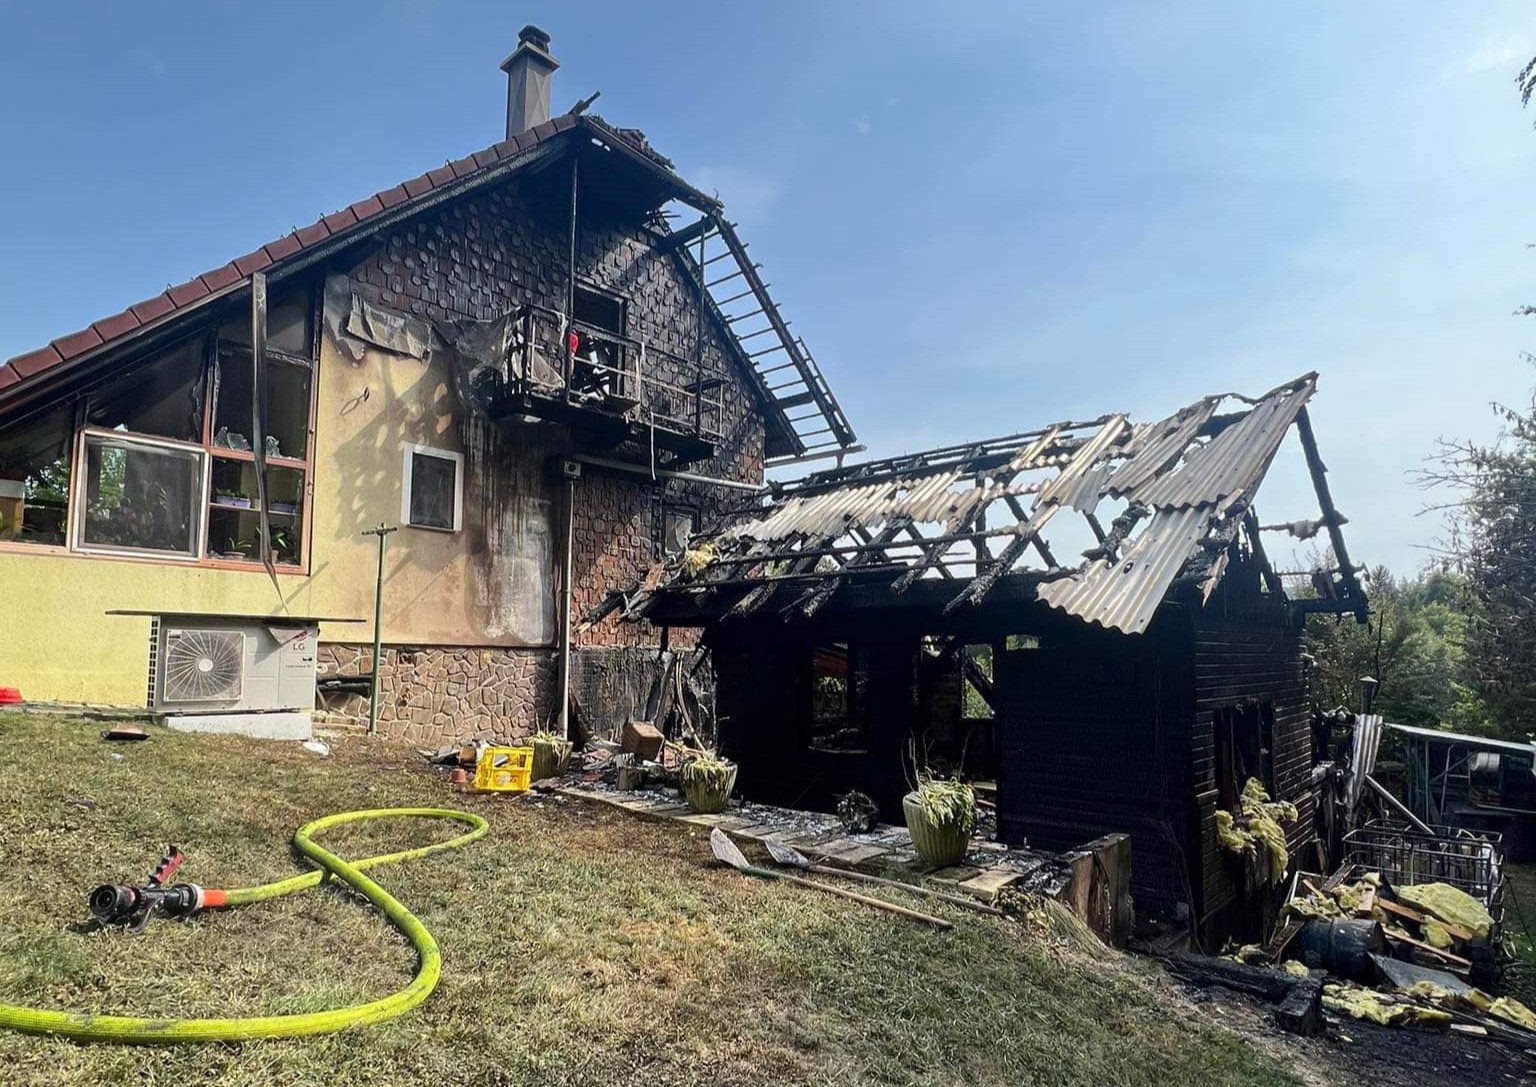 FOTO: Zaradi napake na električni napeljavi v Poljčanah zagoreli lopa in hiša